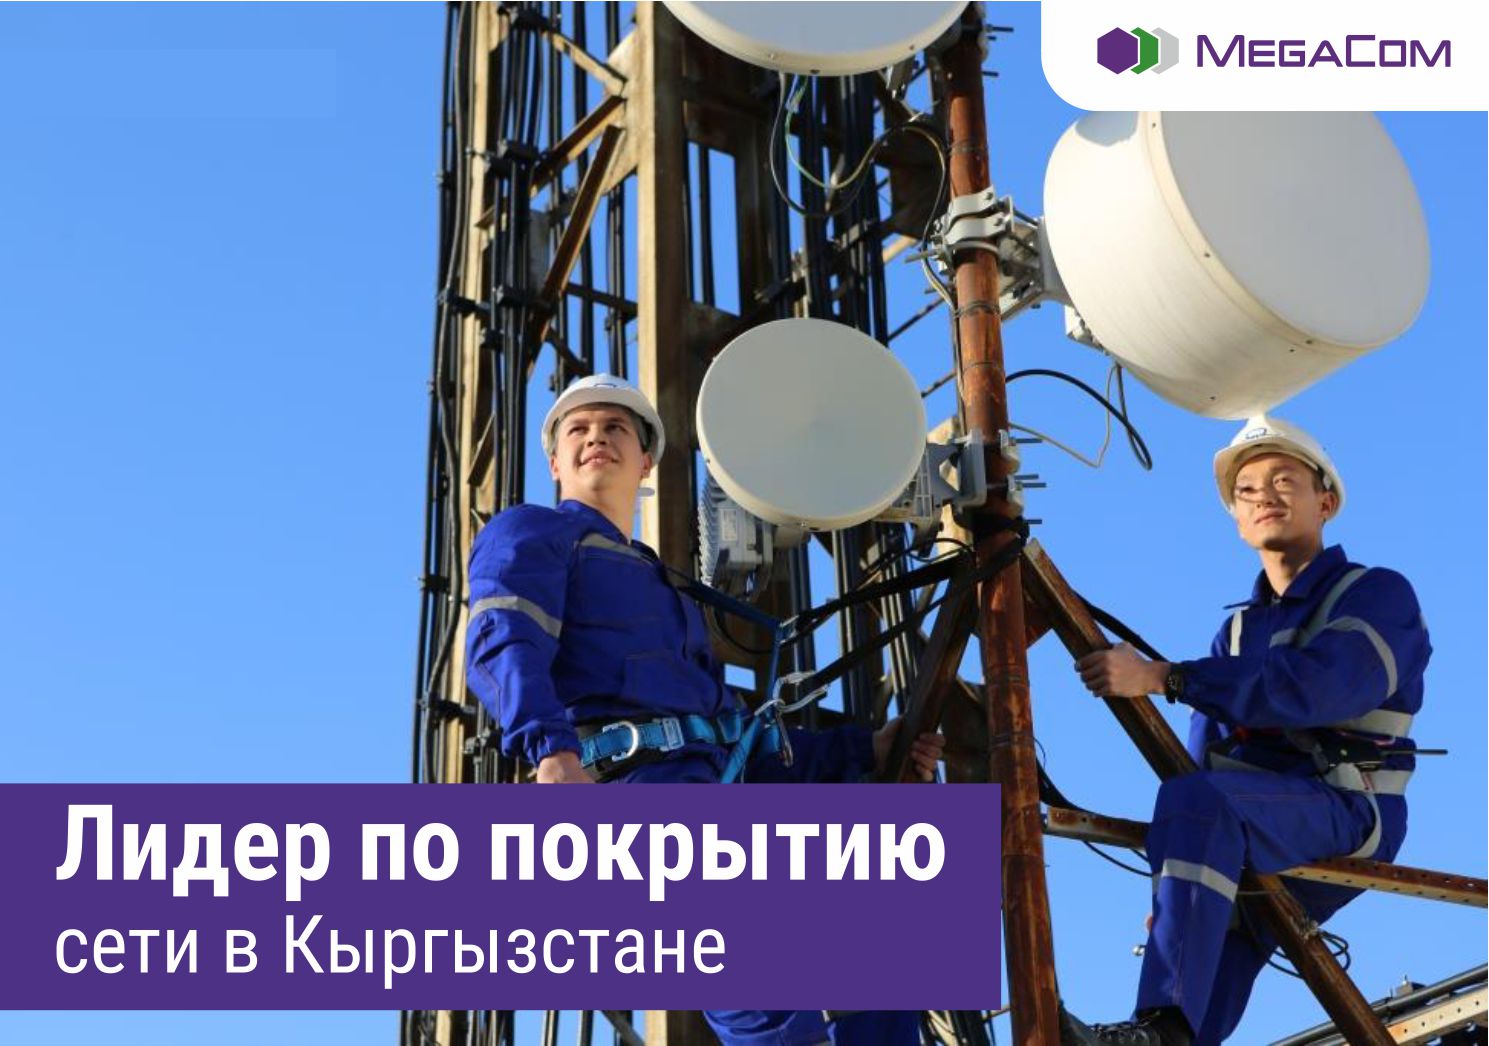 Лидер по охвату мобильной связью продолжает развитие сети по всей территории Кыргызстана. В мае этого года специалистами компании MegaCom проведены масштабные технические работы по улучшению качества связи для абонентов компании.